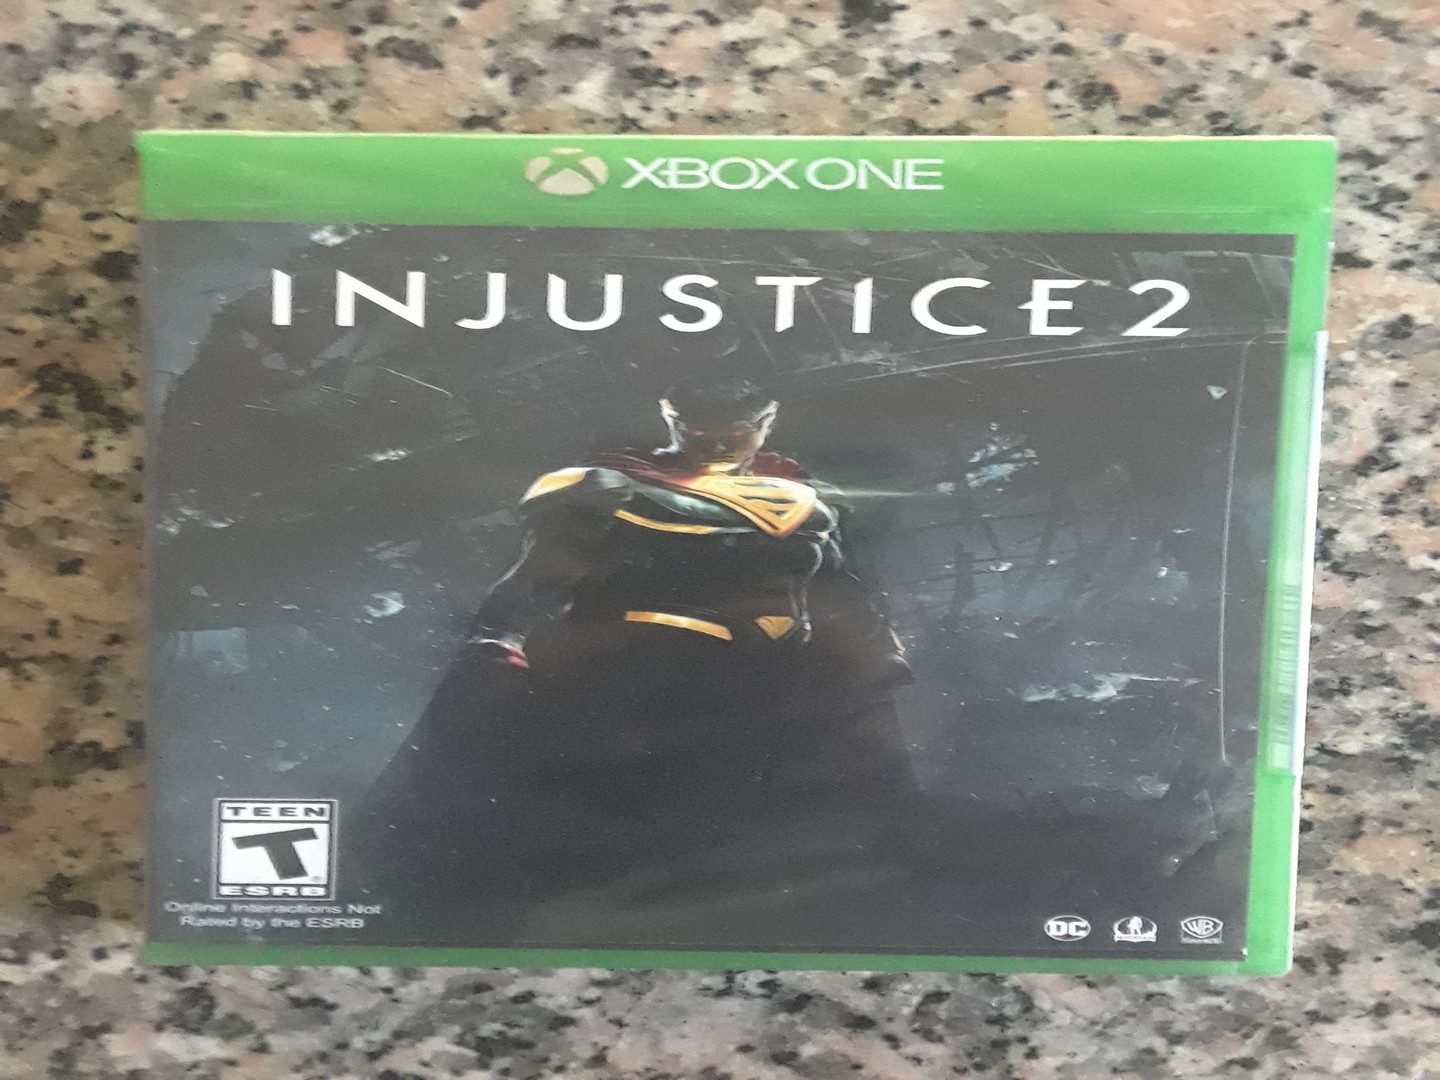 consolas y videojuegos - Injuste 2 Para Xbox one